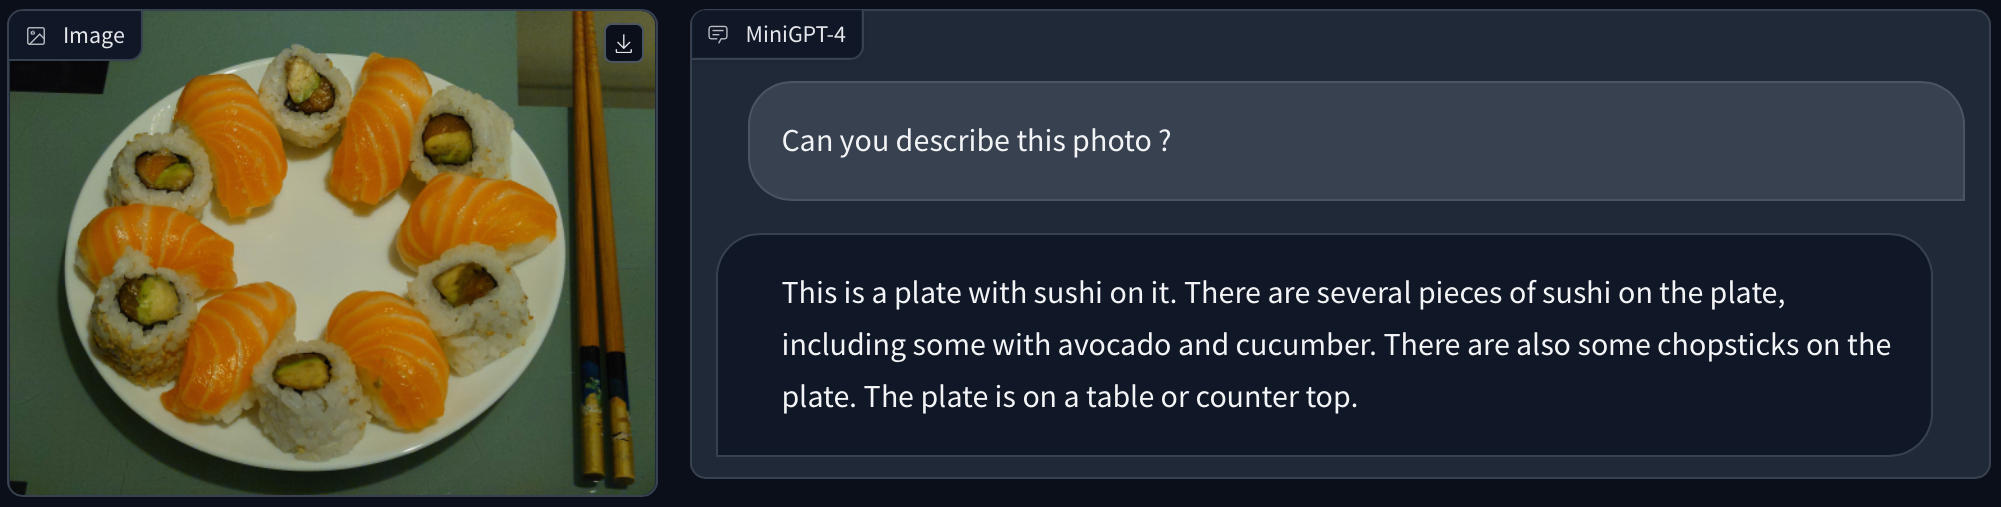 Description d'une photo contenant une assiette de sushis avec MiniGPT